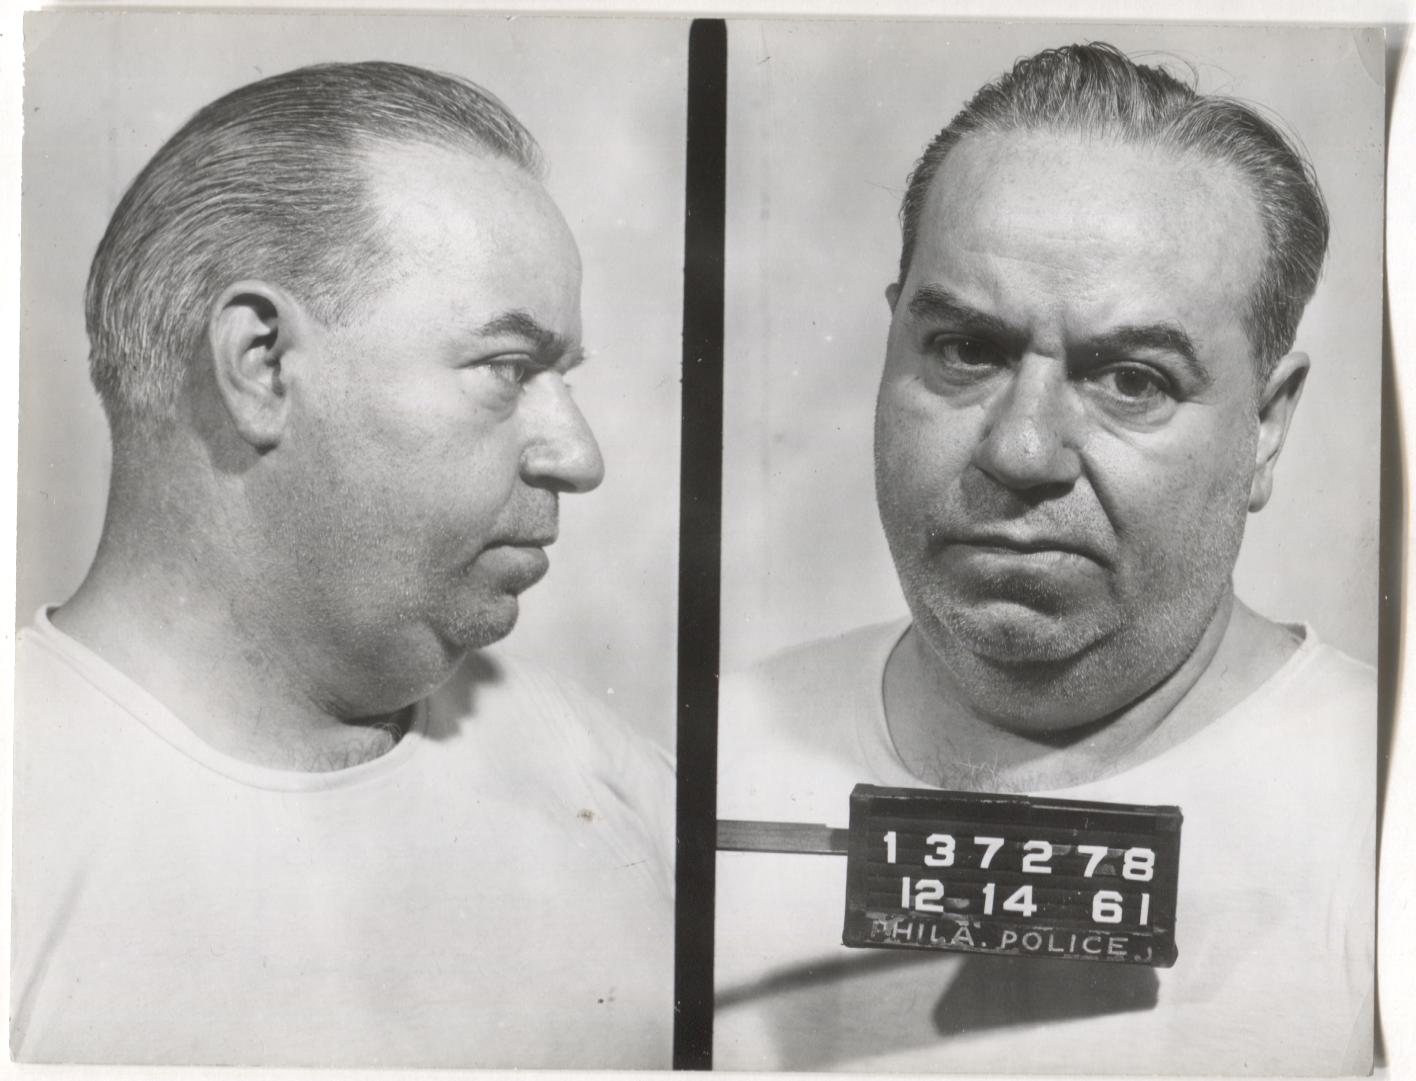 Frank Cervino Mugshot - Arrested on 12/14/1961 for Handbooking on Horses